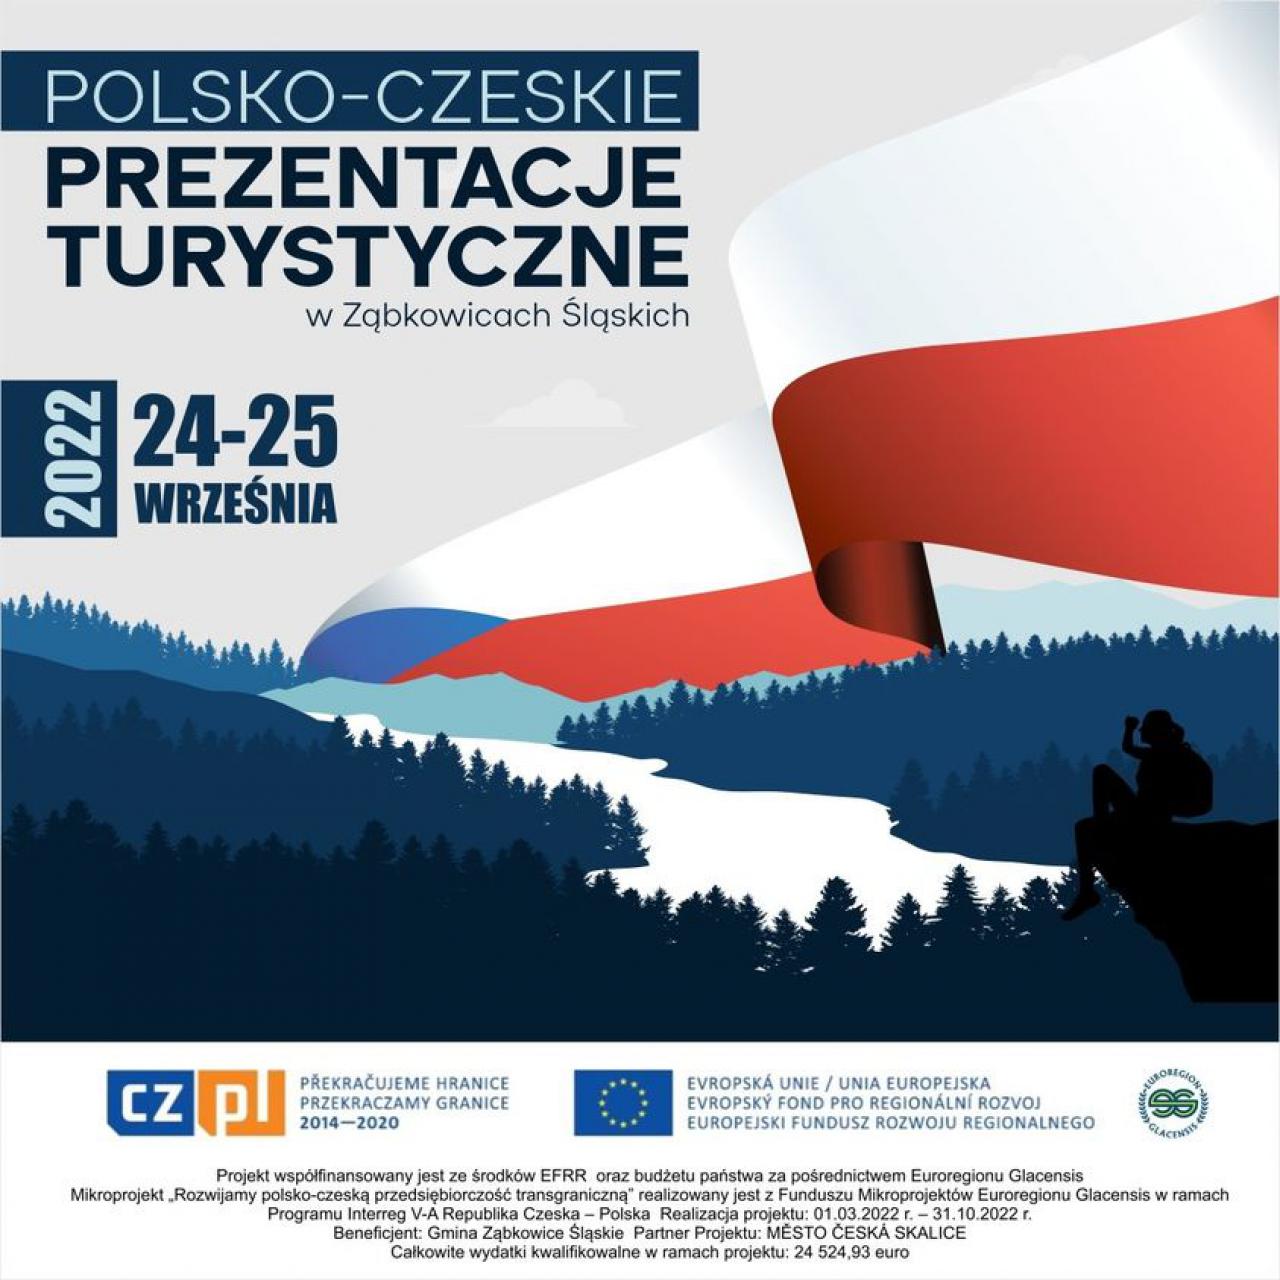  Polsko-Czeskie Prezentacje Turystyczne w Ząbkowicach Śląskich